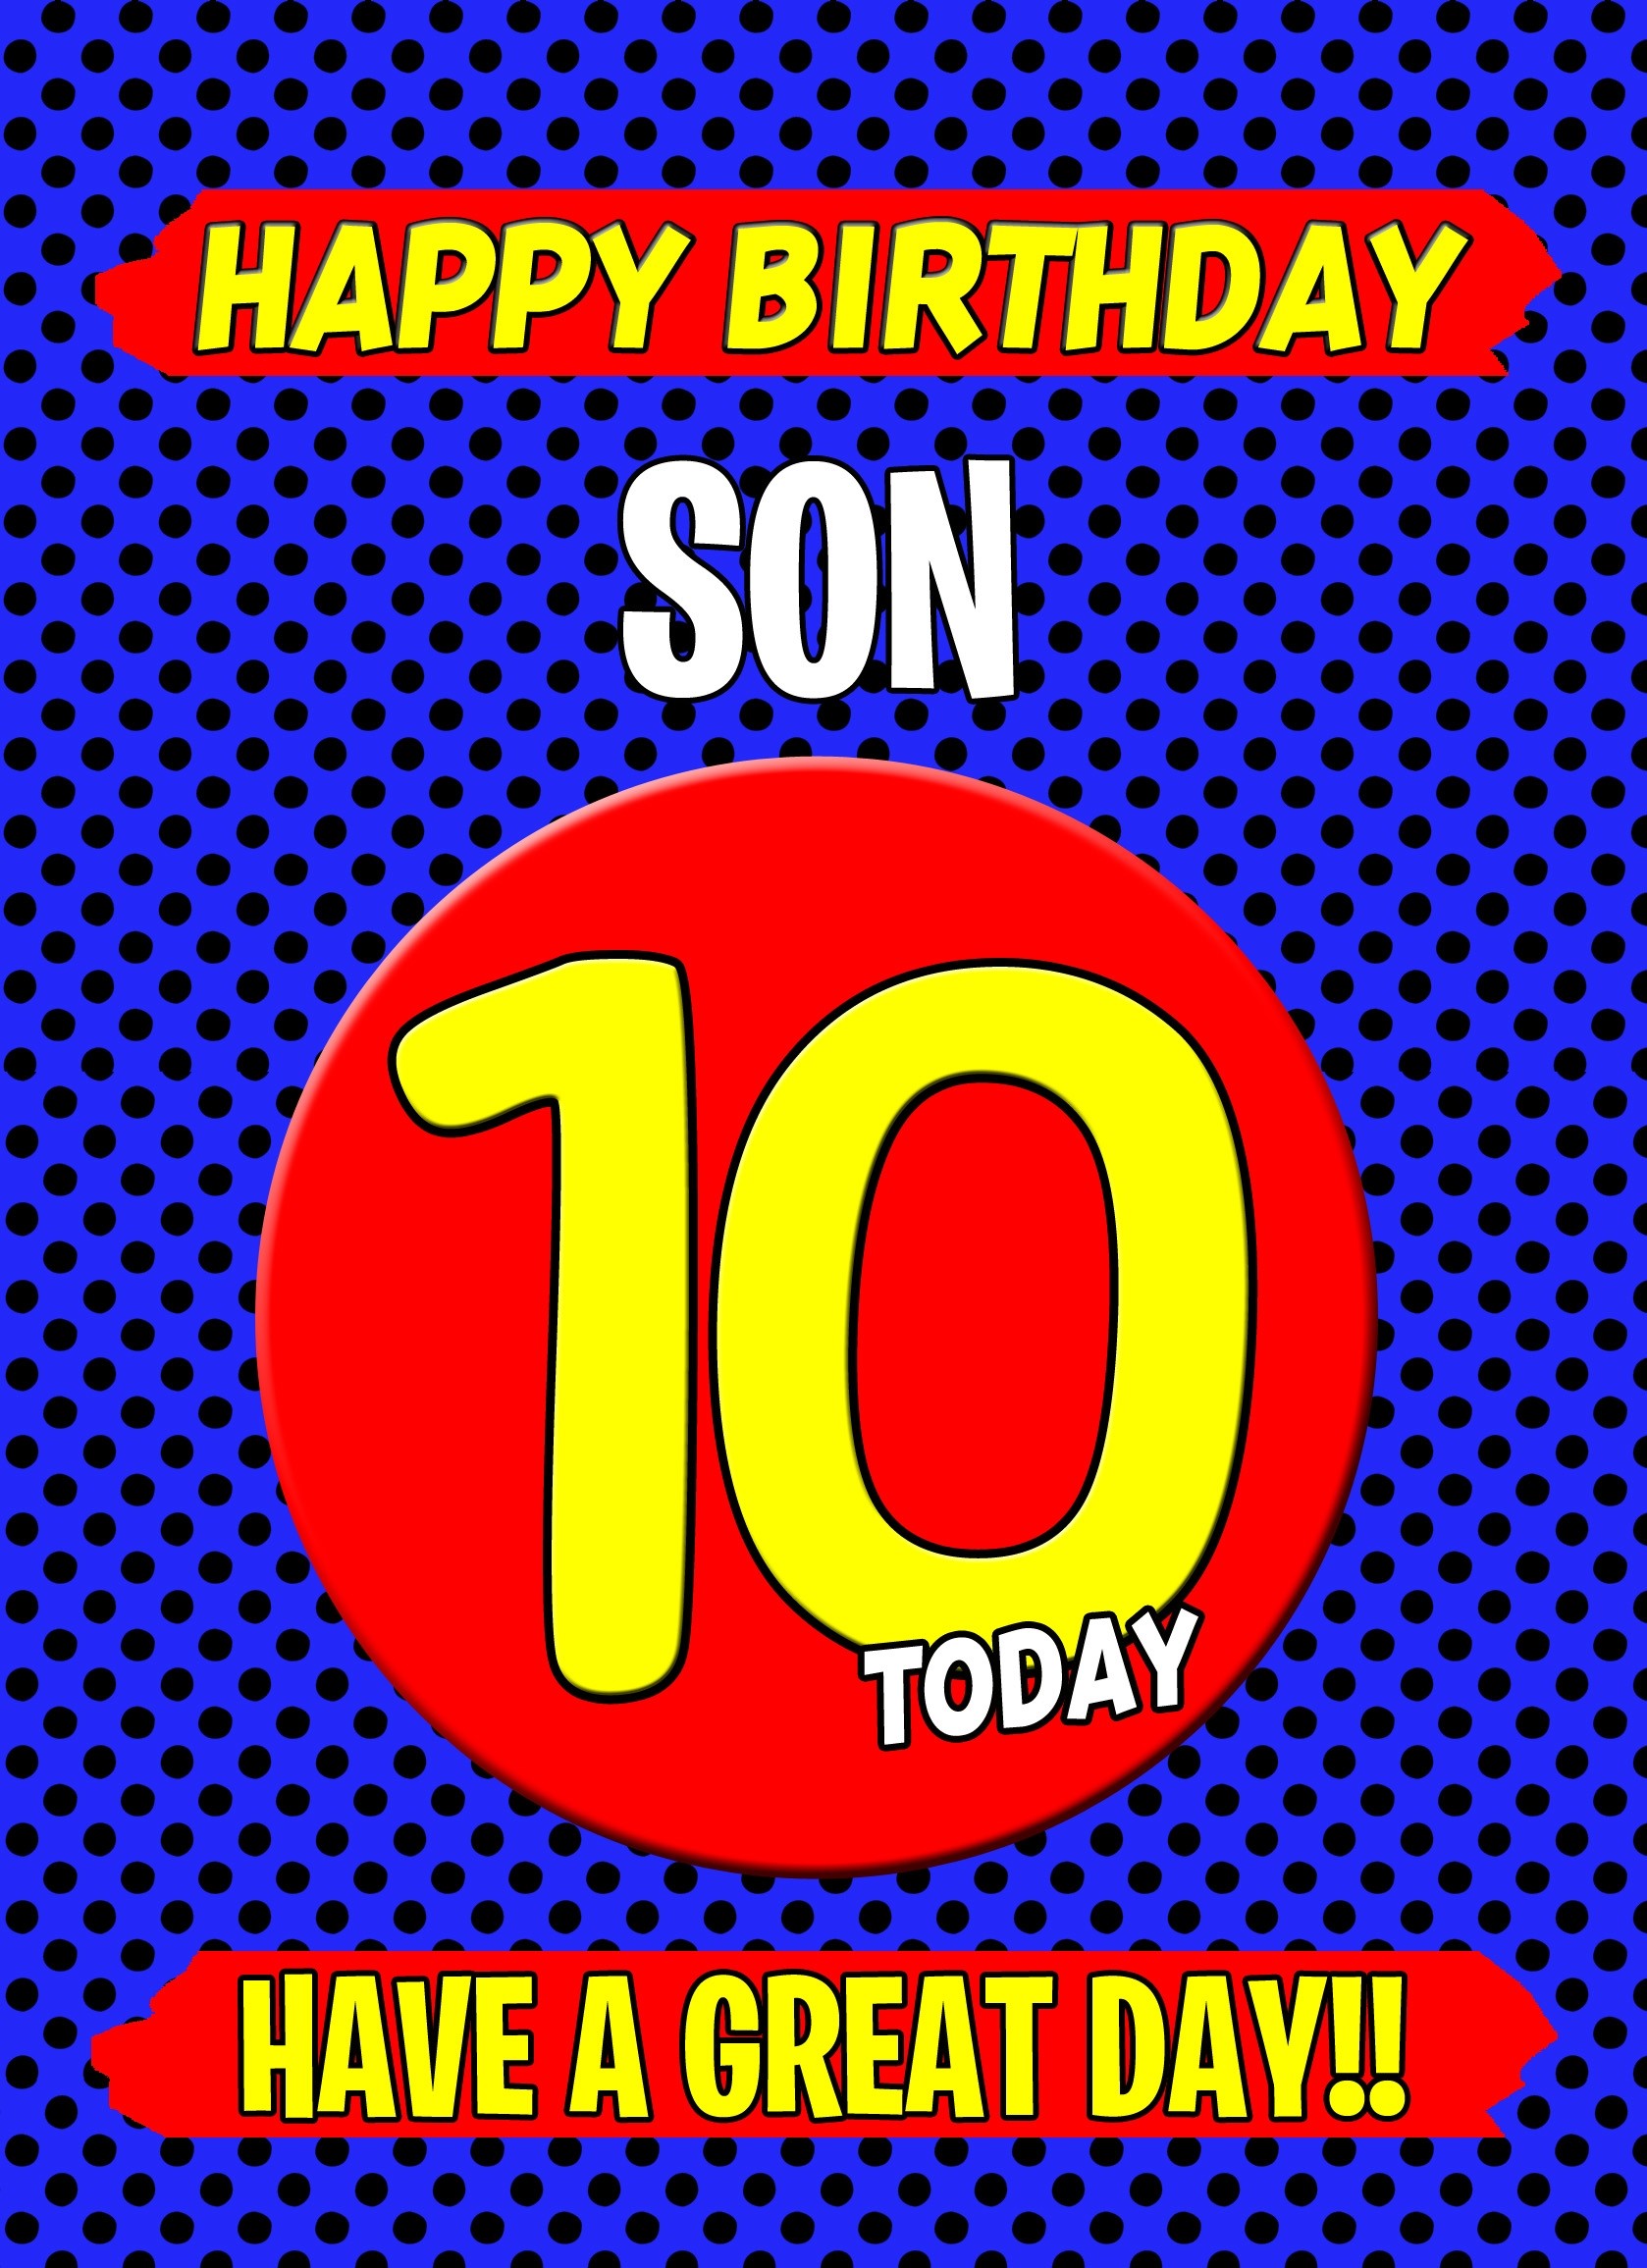 Son 10th Birthday Card (Blue)